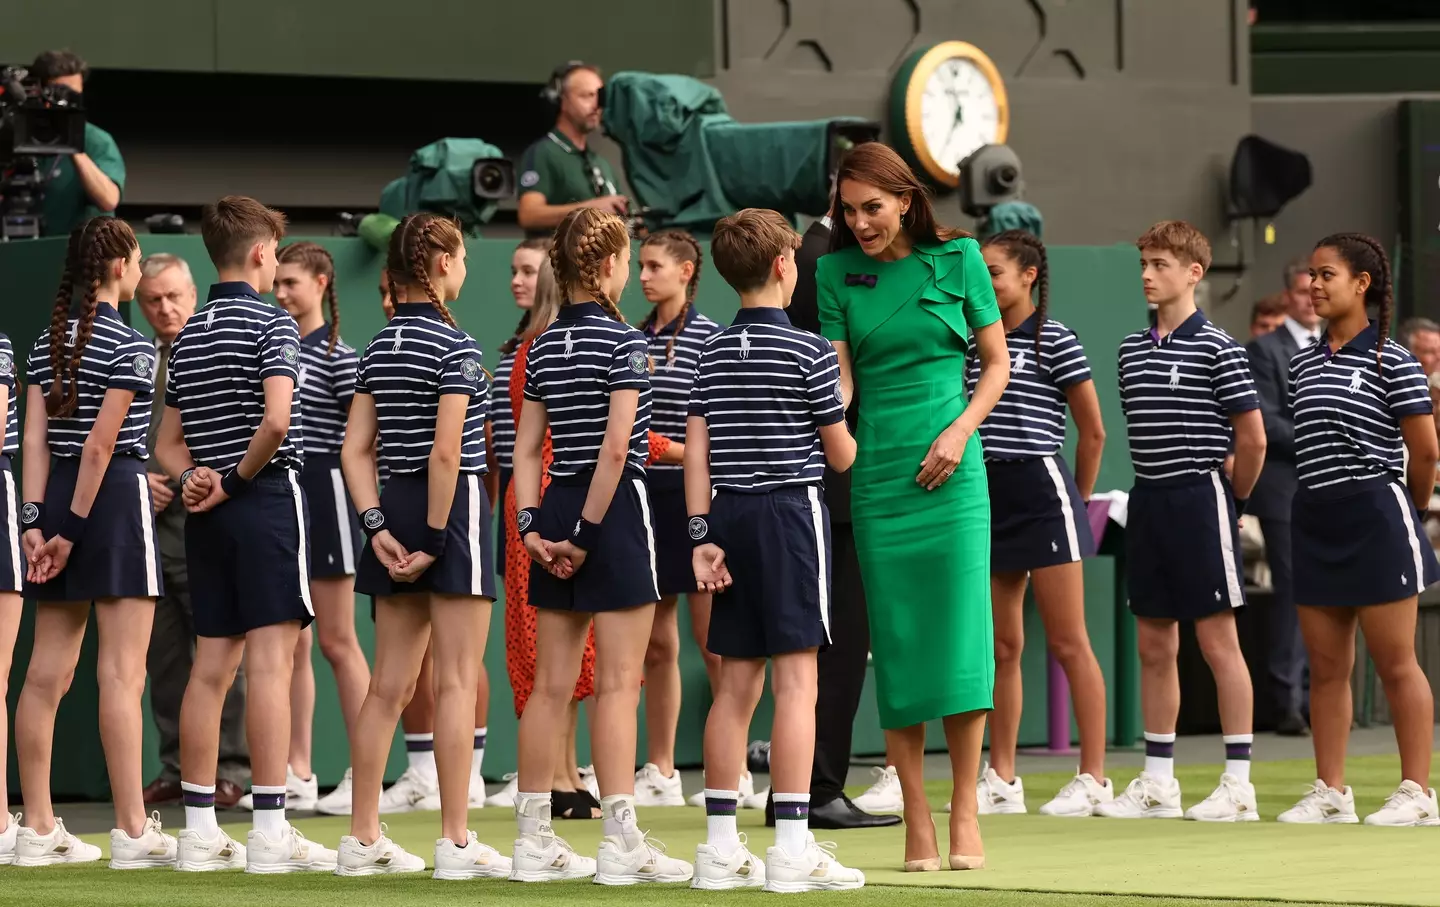 The Princess of Wales at Wimbledon.